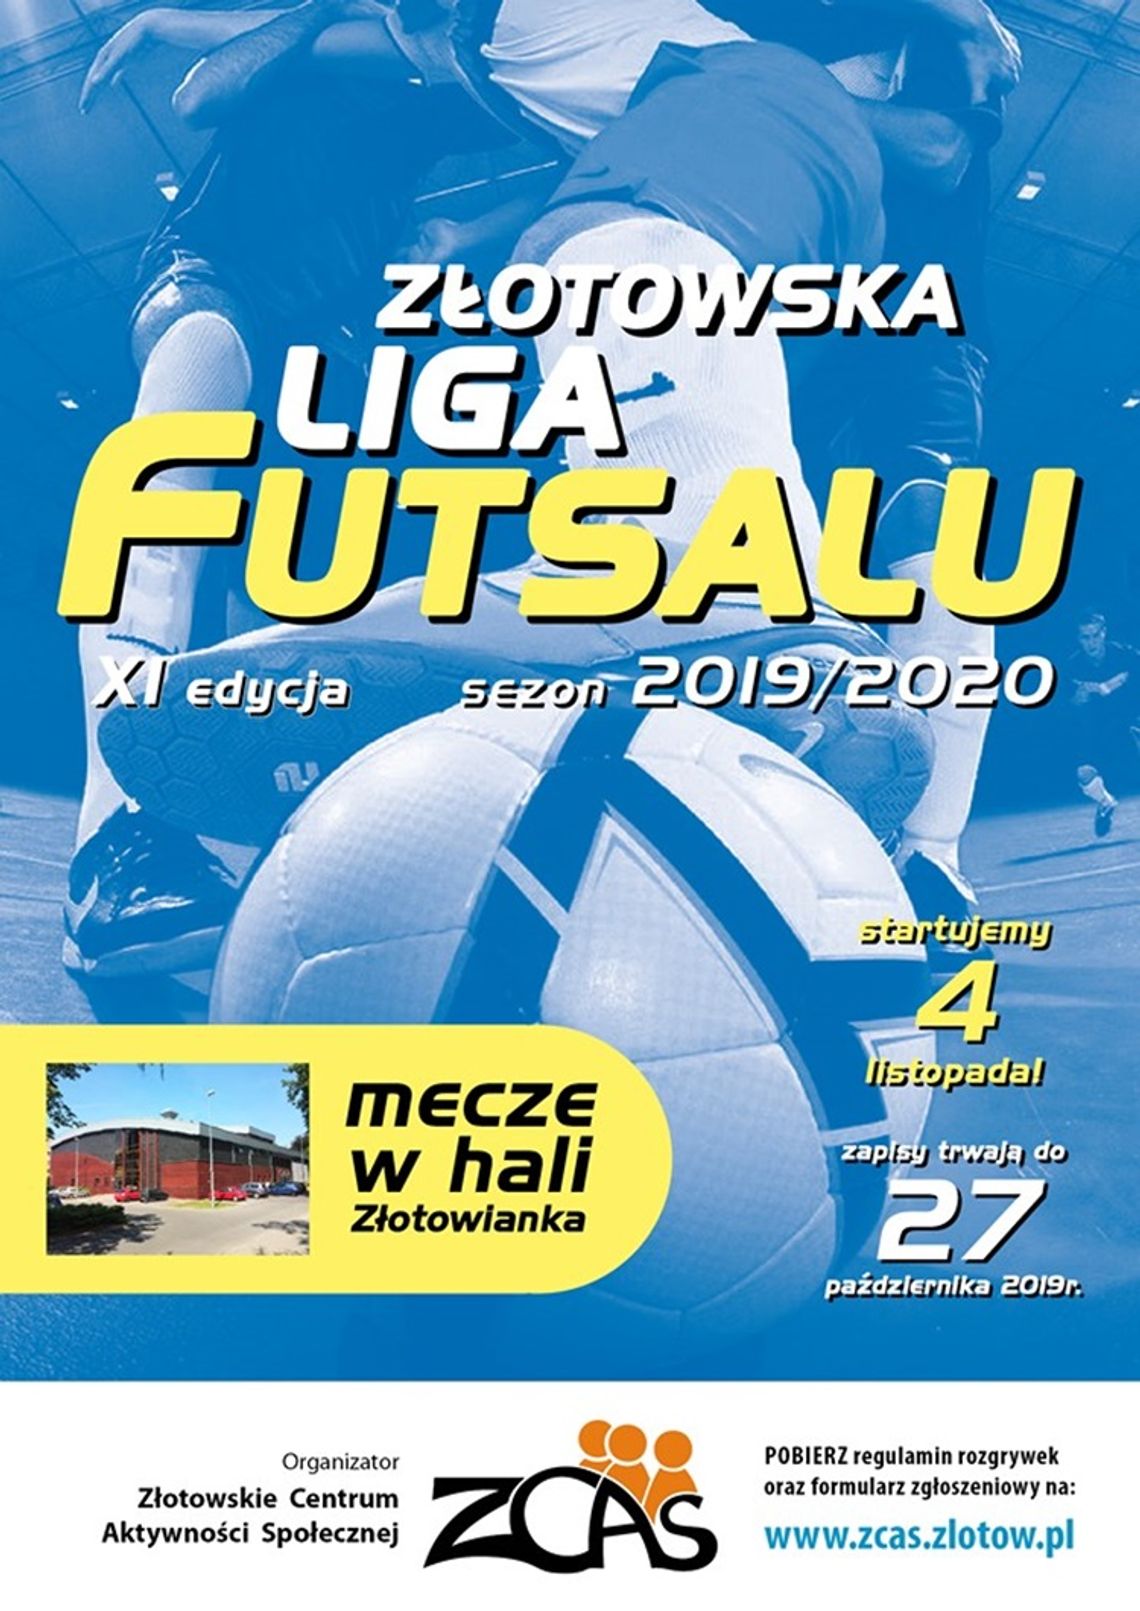 Nowa edycja Złotowskiej Ligi Futsalu - zapisy!